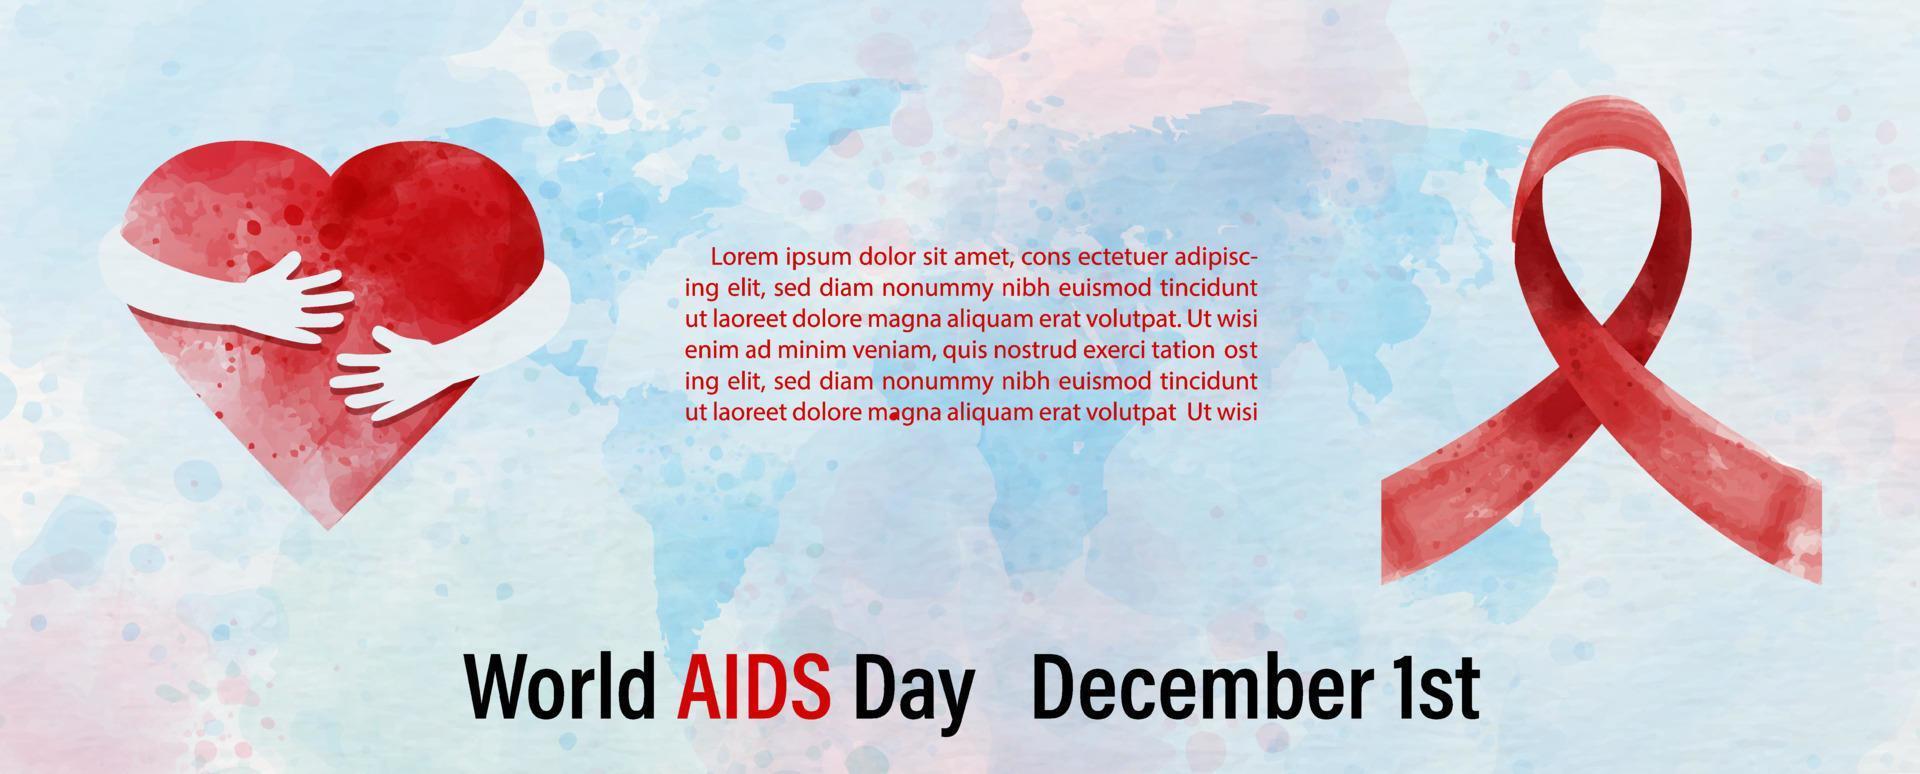 Posterkampagne zum Welt-Aids-Tag mit rotem Band im Aquarellstil und Beispieltexten auf blauer Weltkarte und weißem Papiermusterhintergrund. Alles im Web-Banner- und Vektordesign. vektor